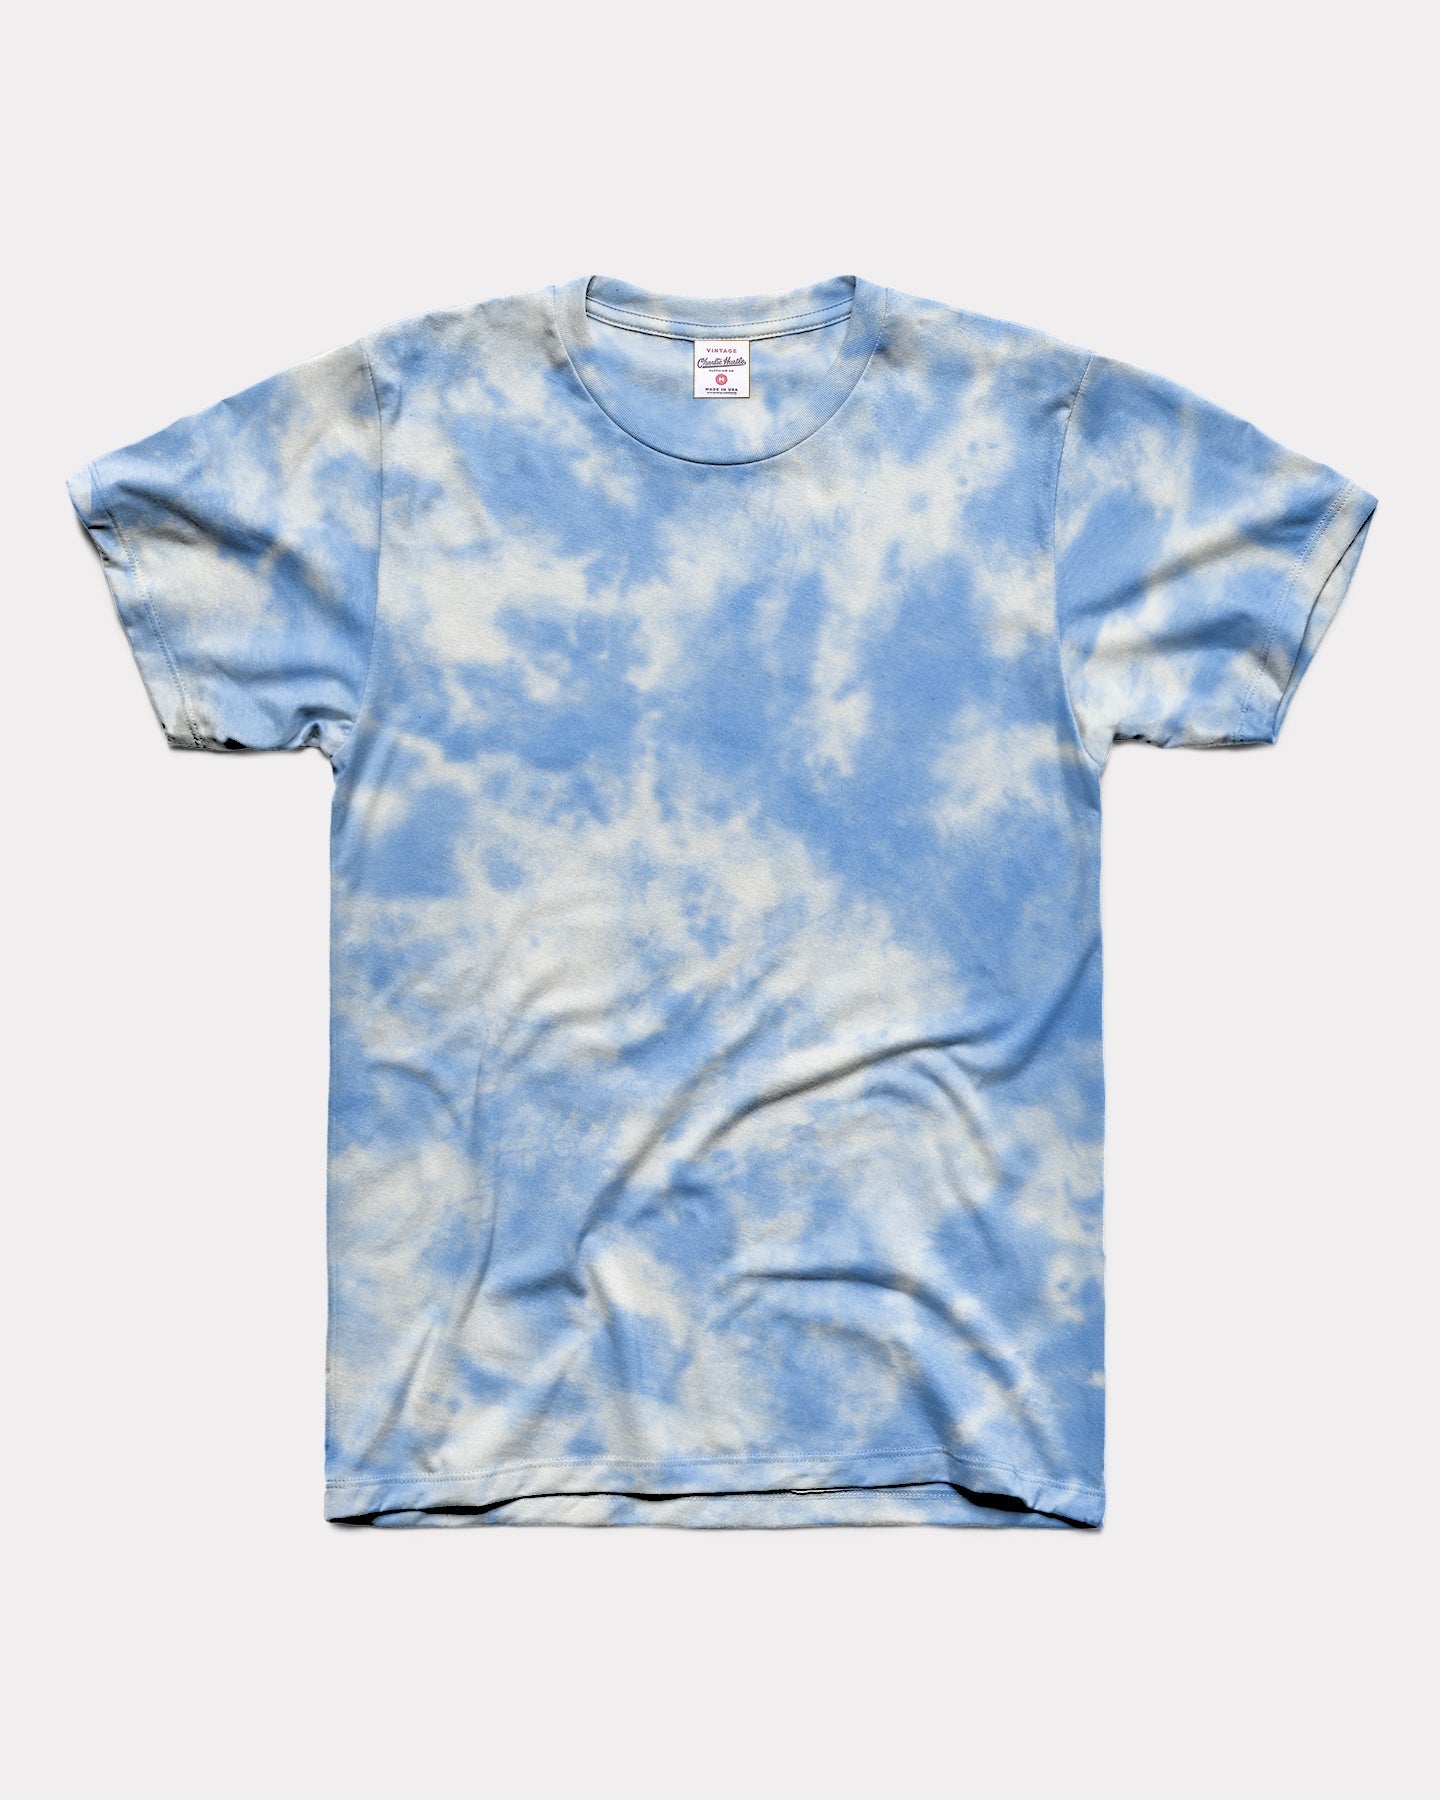 kage Overlegenhed Et centralt værktøj, der spiller en vigtig rolle Blue and White Tie Dye Unisex Essential T-Shirt | CHARLIE HUSTLE